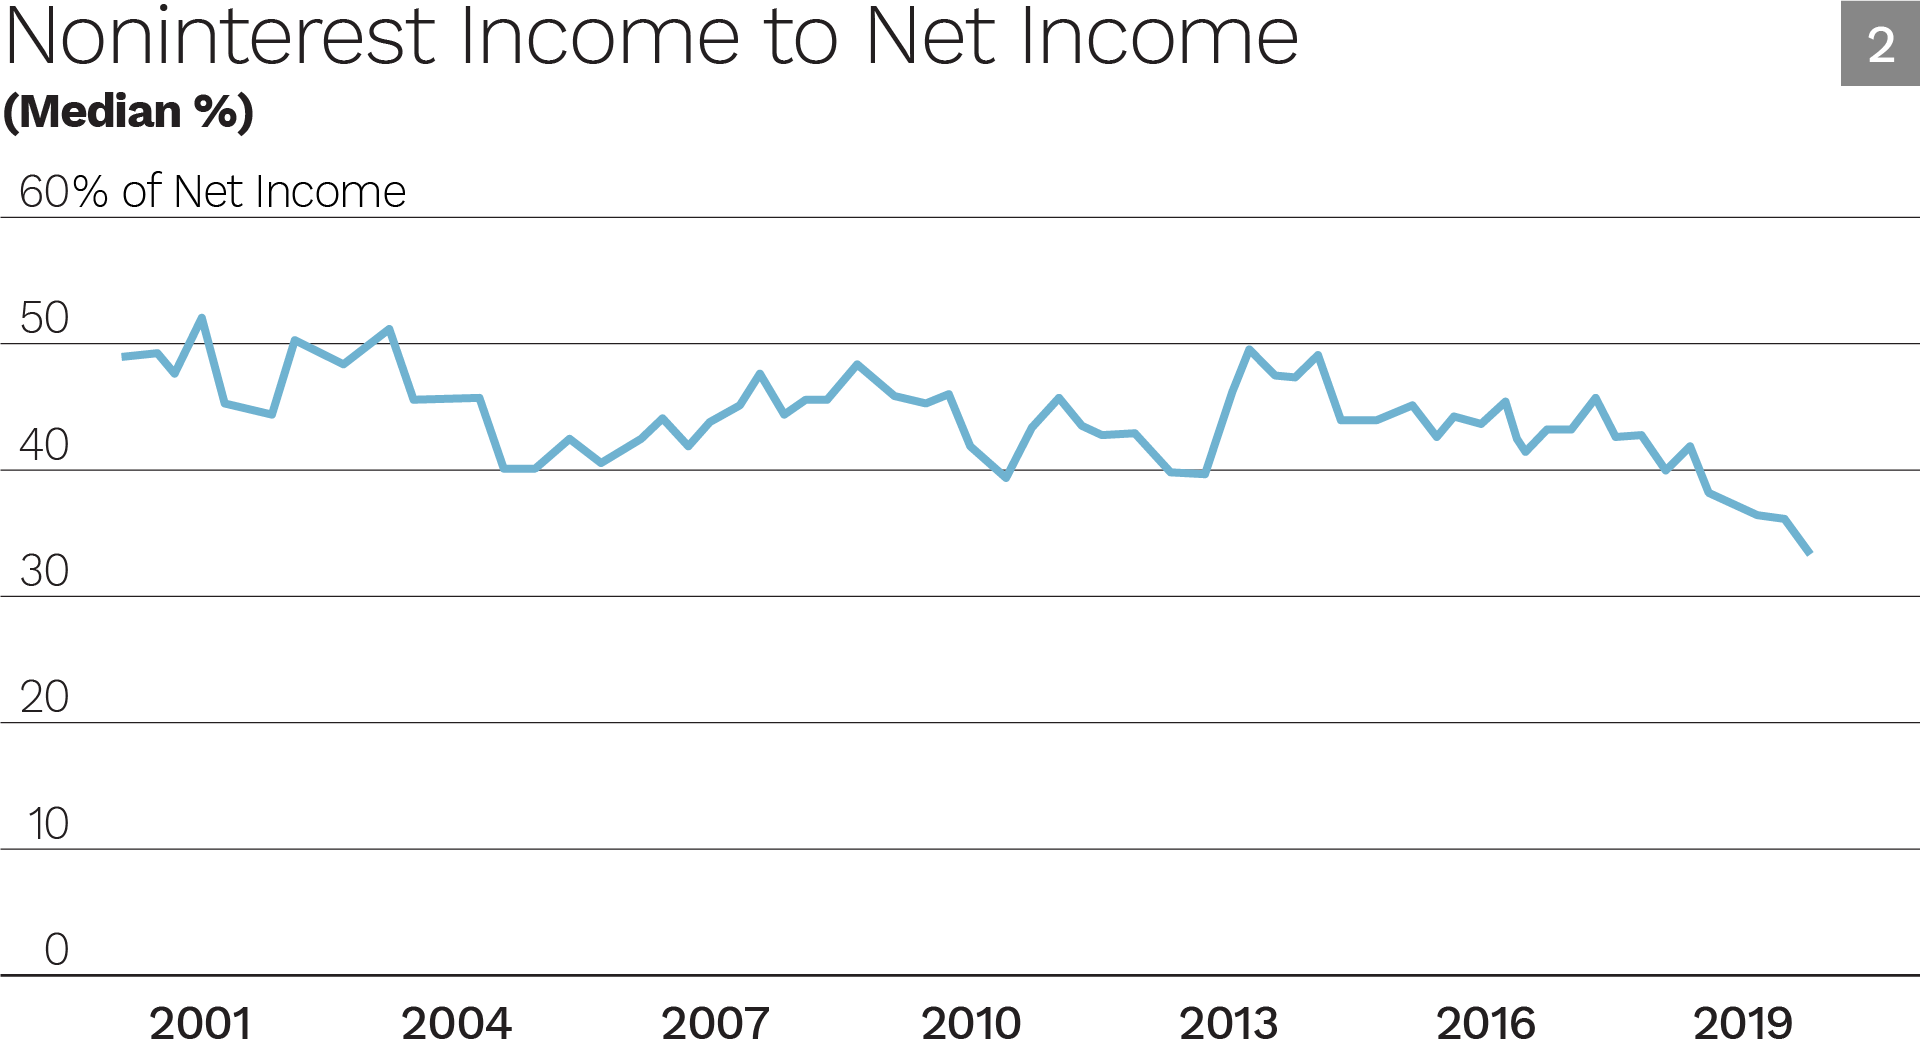 Noninterest Income to Net Income